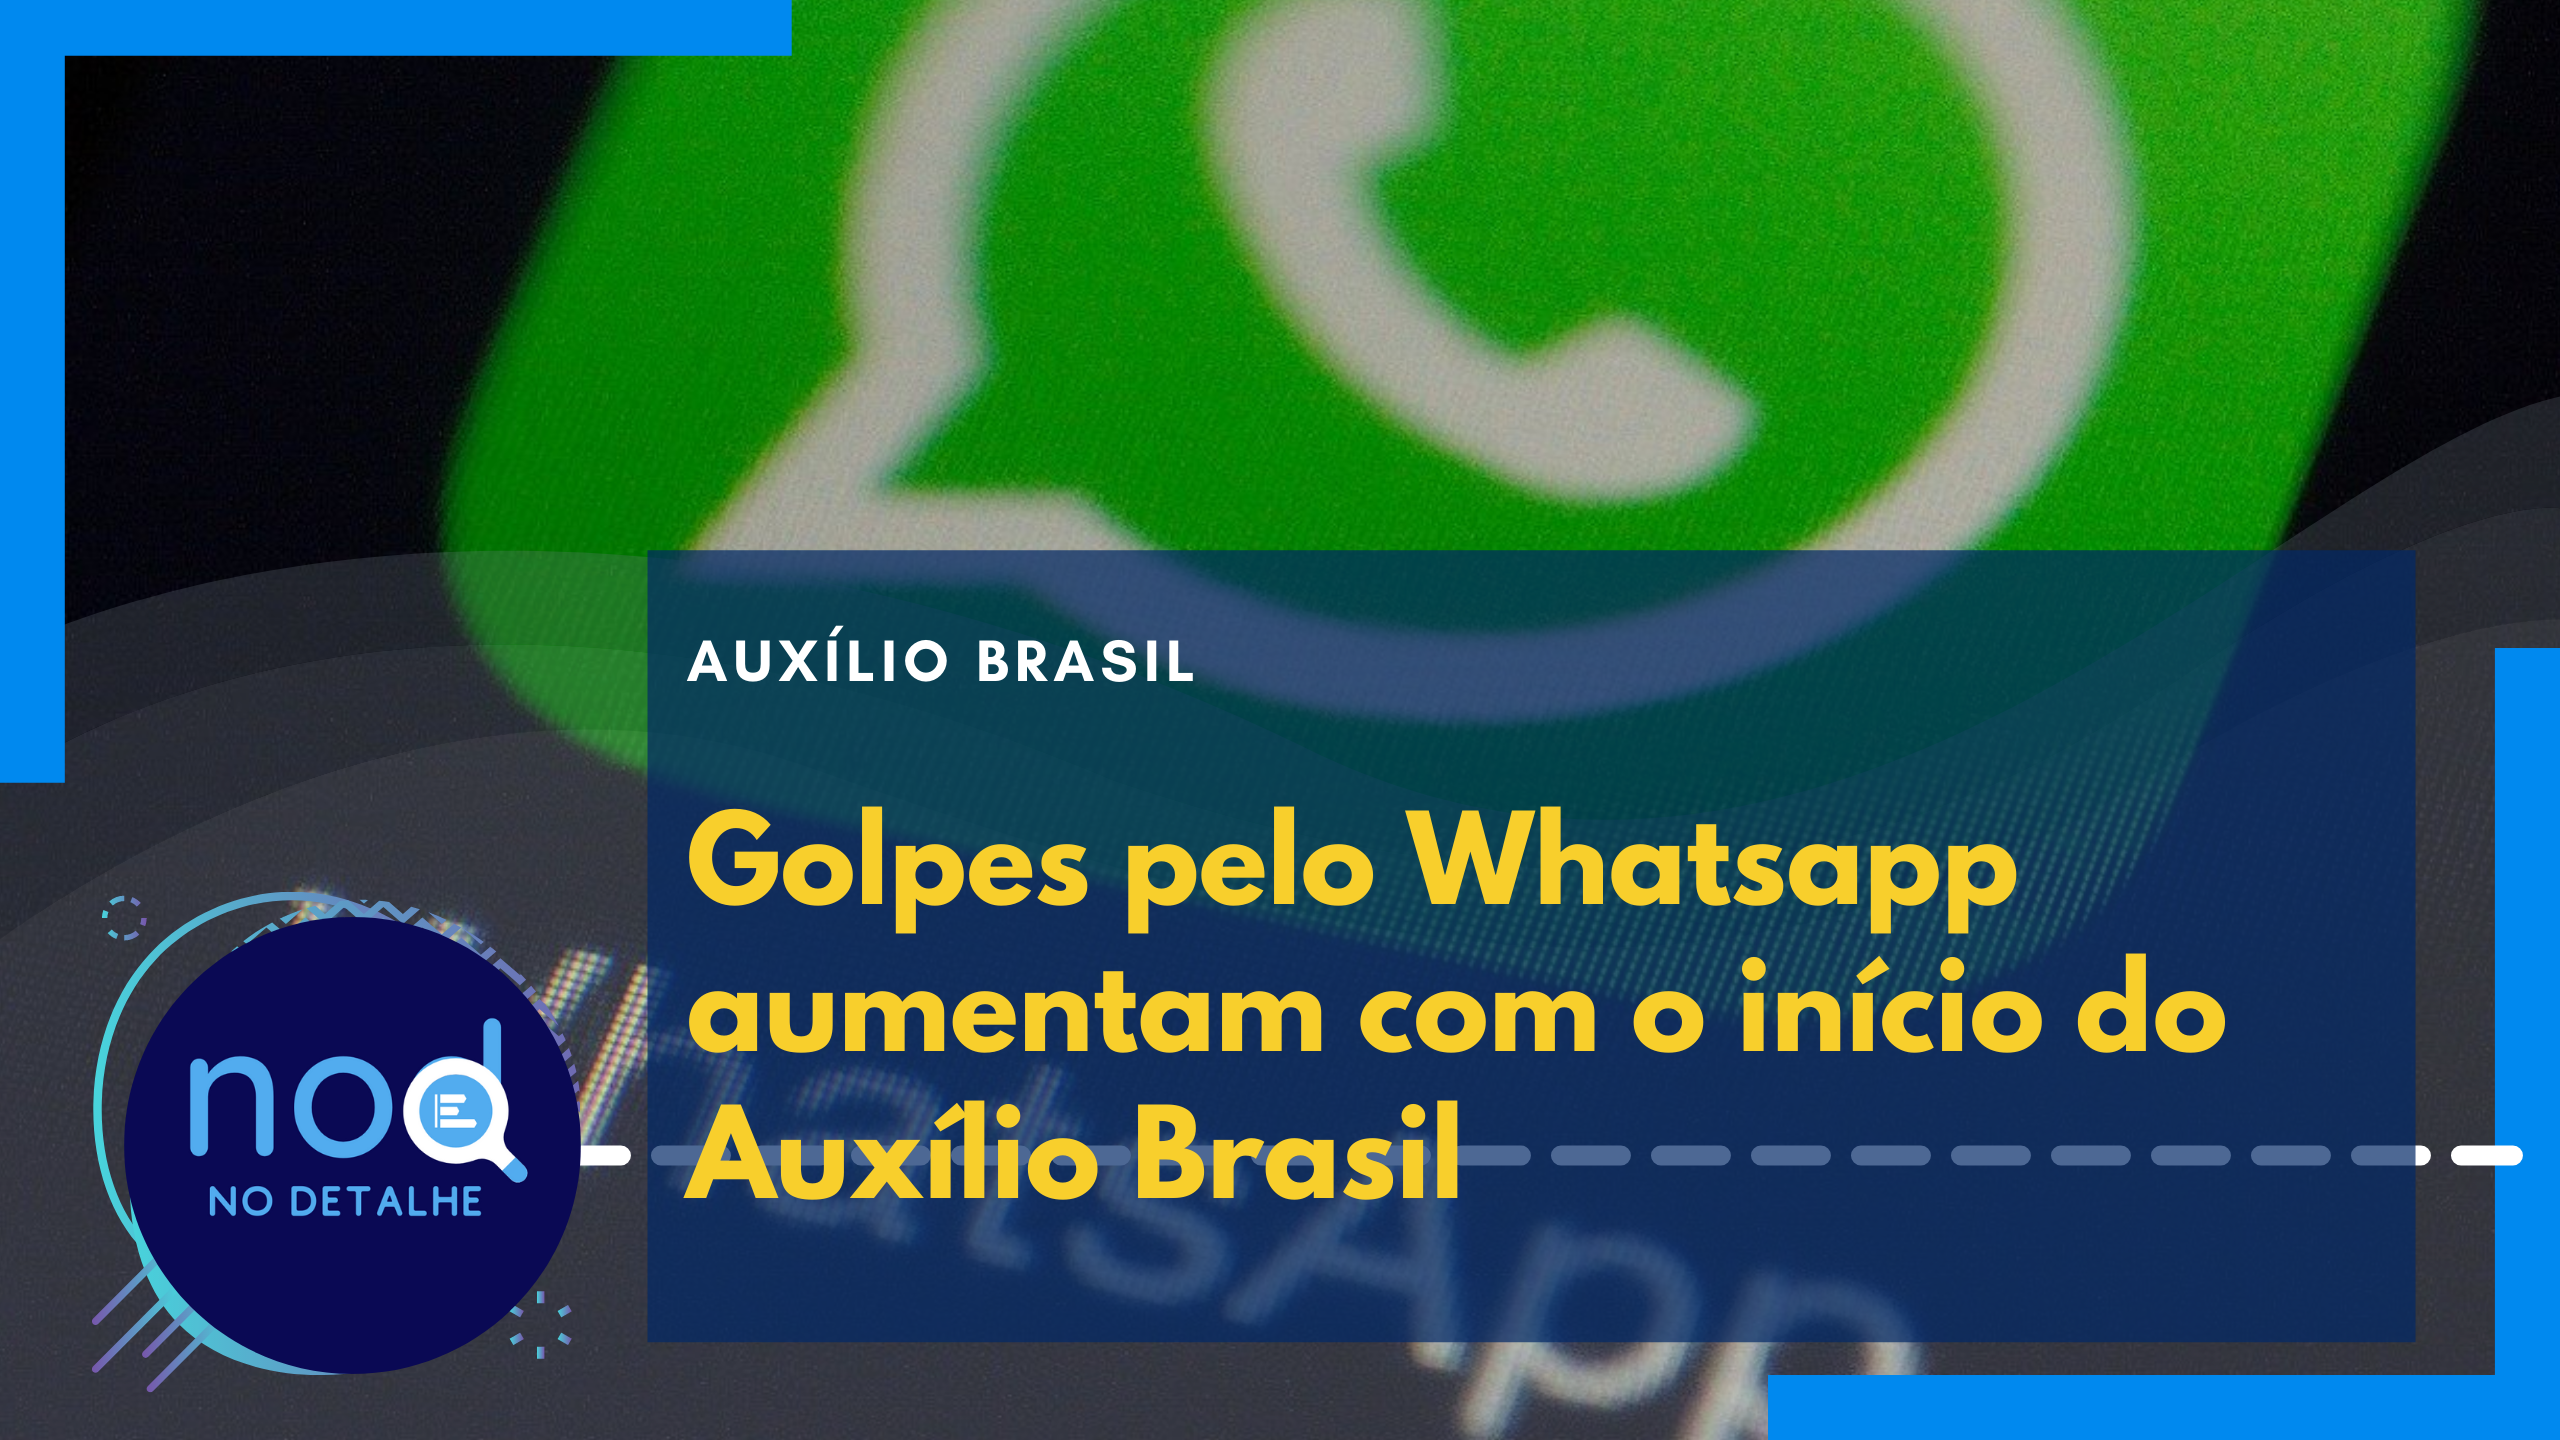 Golpes pelo Whatsapp aumentam com o início do Auxílio Brasil